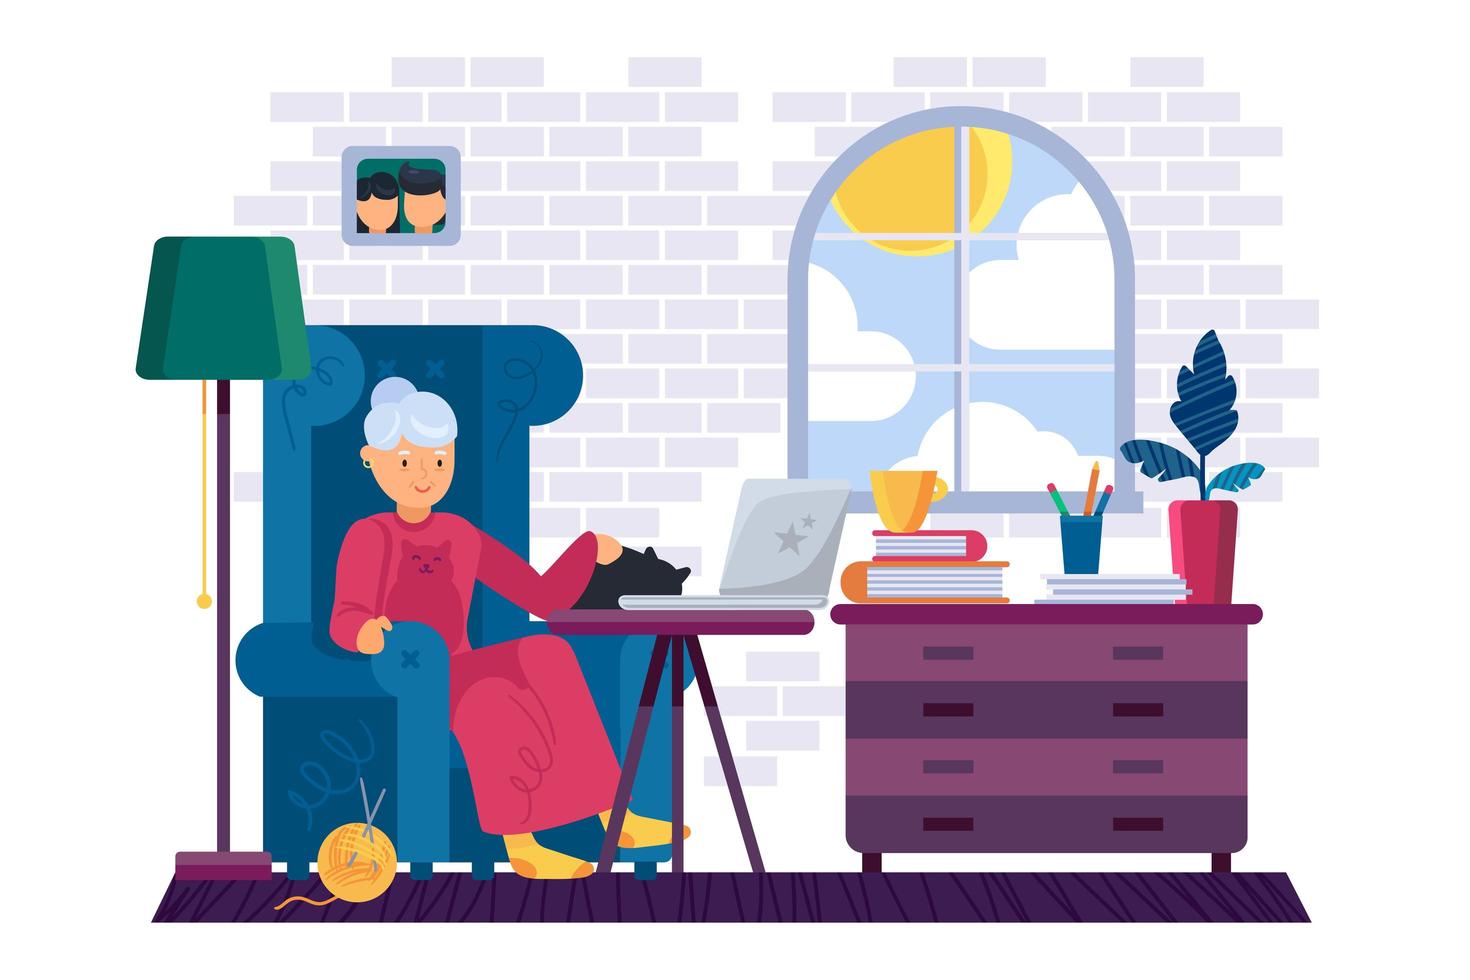 grand-mère travaillant sur un ordinateur portable à la maison vecteur. grand-mère assise dans un fauteuil, caressant un animal domestique de chat et regardant une vidéo ou parlant avec sa famille sur un ordinateur portable illustration de dessin animé plat vecteur